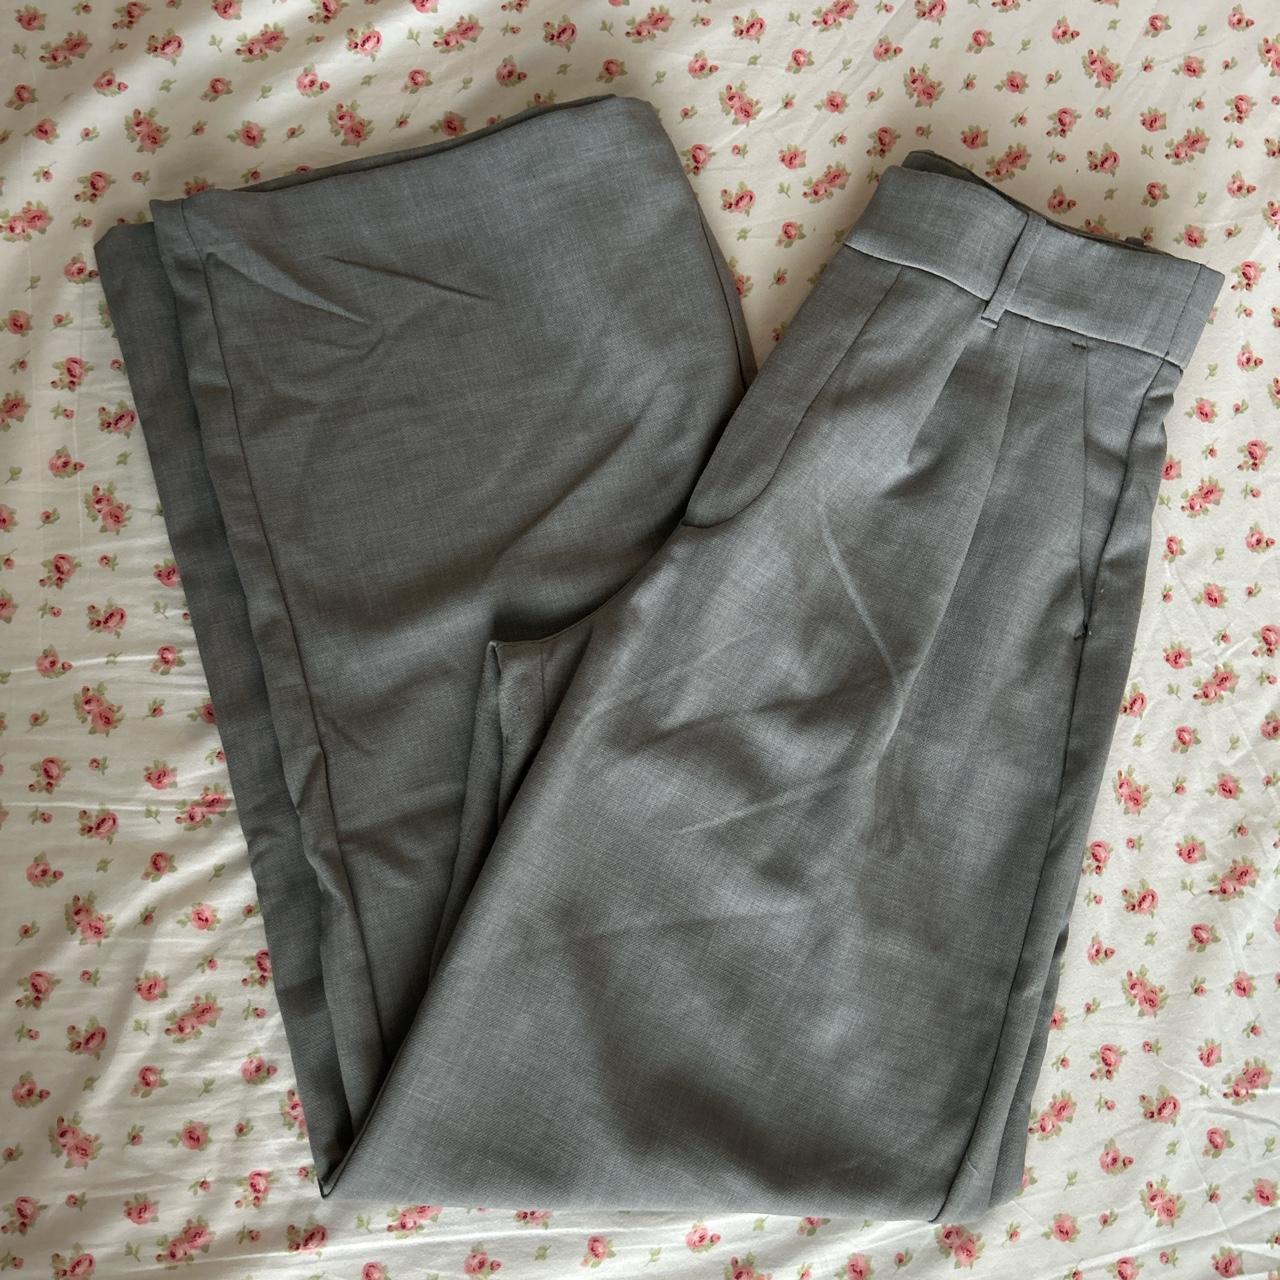 Abercrombie & Fitch Women's Grey Trousers | Depop